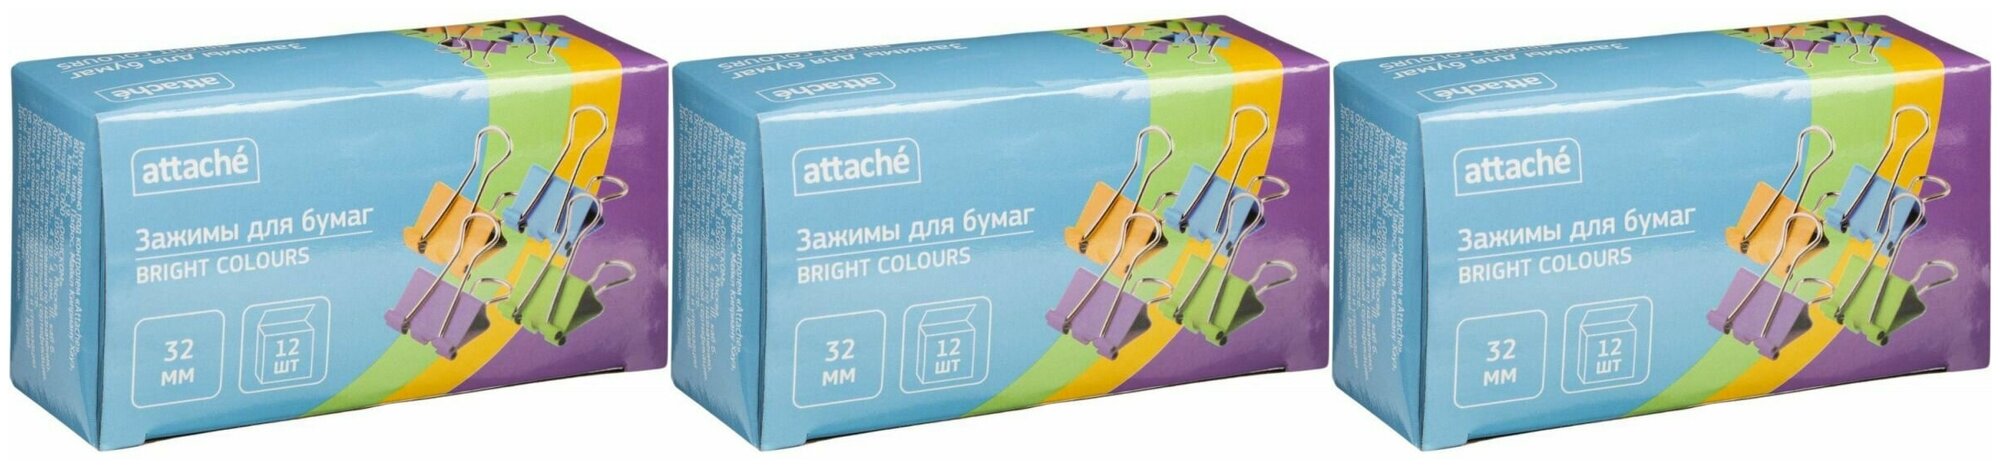 Attache Bright Colours Зажимы для бумаг цветные 32 мм 12 шт, 3 уп